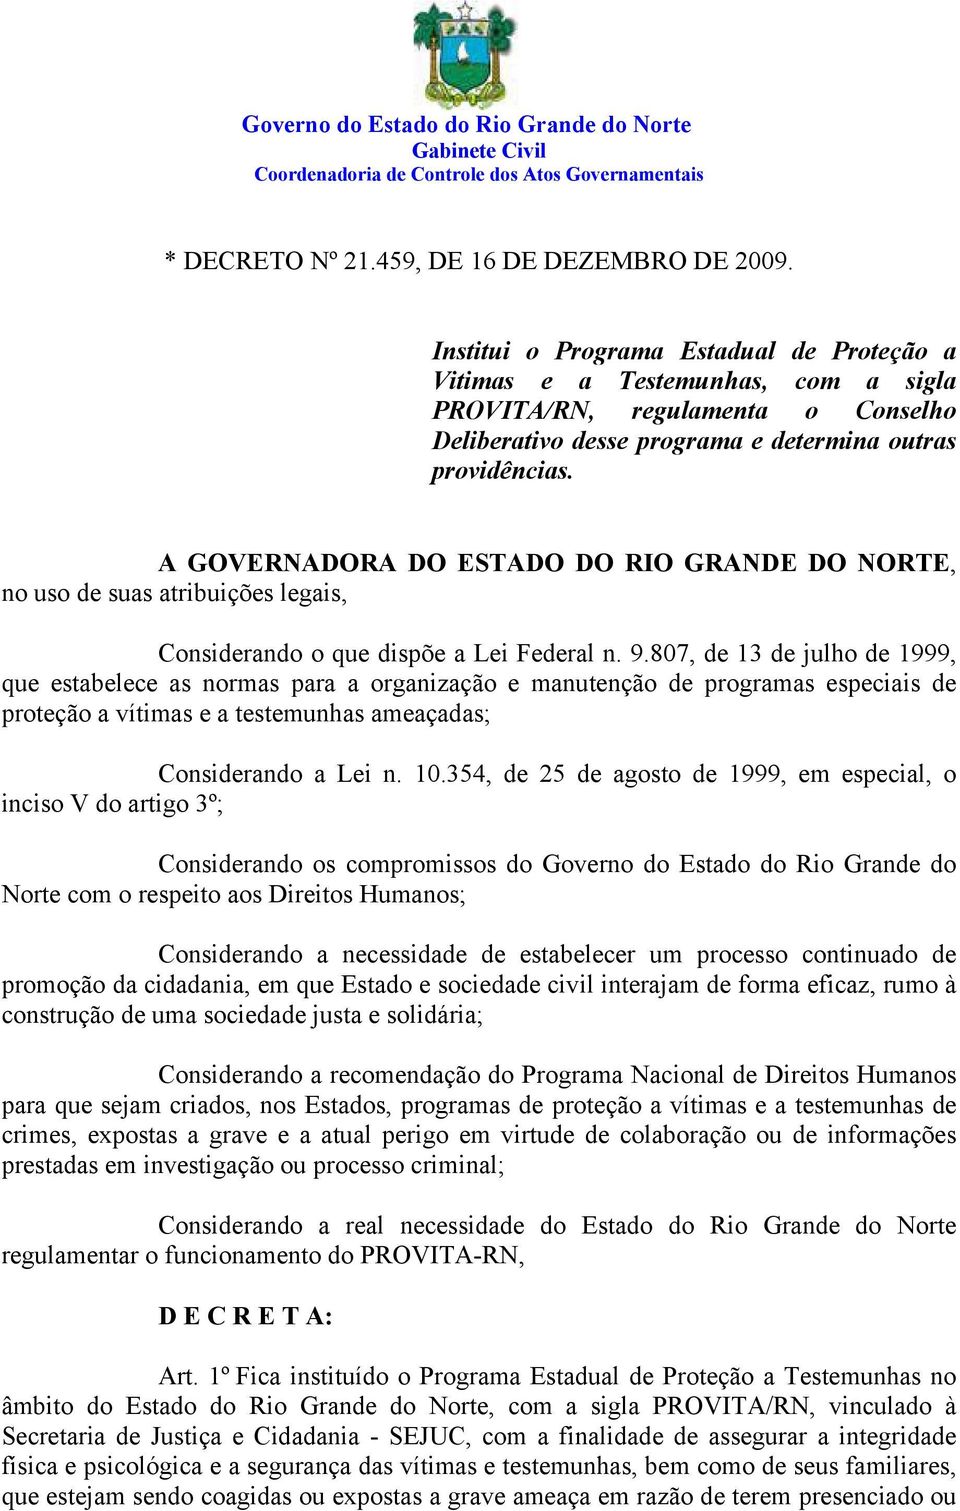 A GOVERNADORA DO ESTADO DO RIO GRANDE DO NORTE, no uso de suas atribuições legais, Considerando o que dispõe a Lei Federal n. 9.